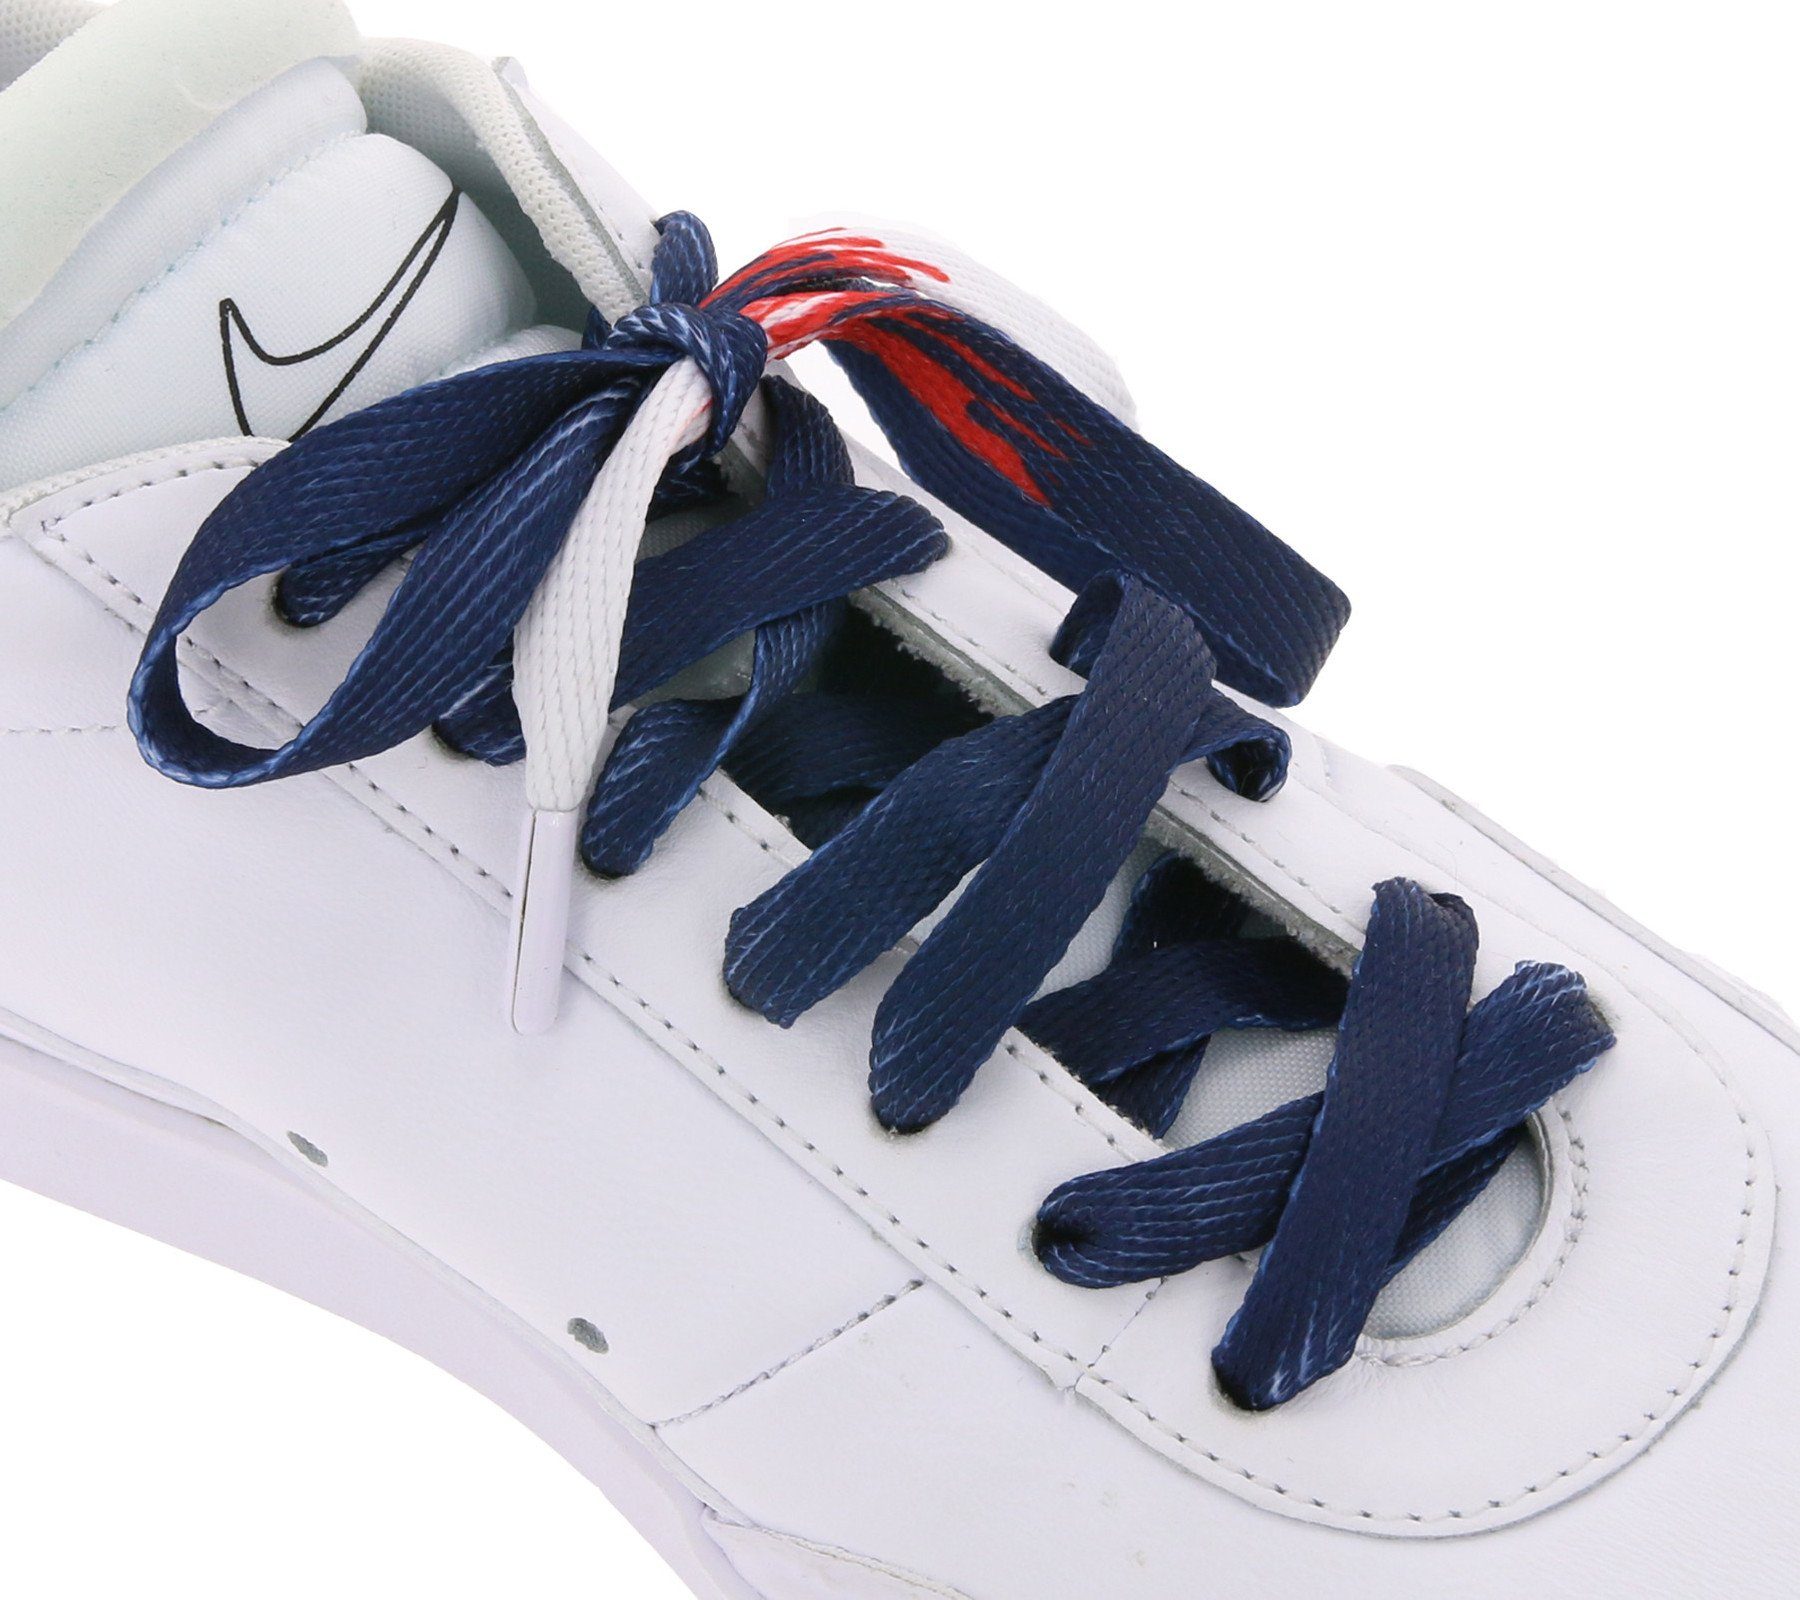 Tubelaces Schnürsenkel TubeLaces Schuhe Schnürsenkel top angesagte Schuhbänder Schnürbänder Navy/Weiß/Rot